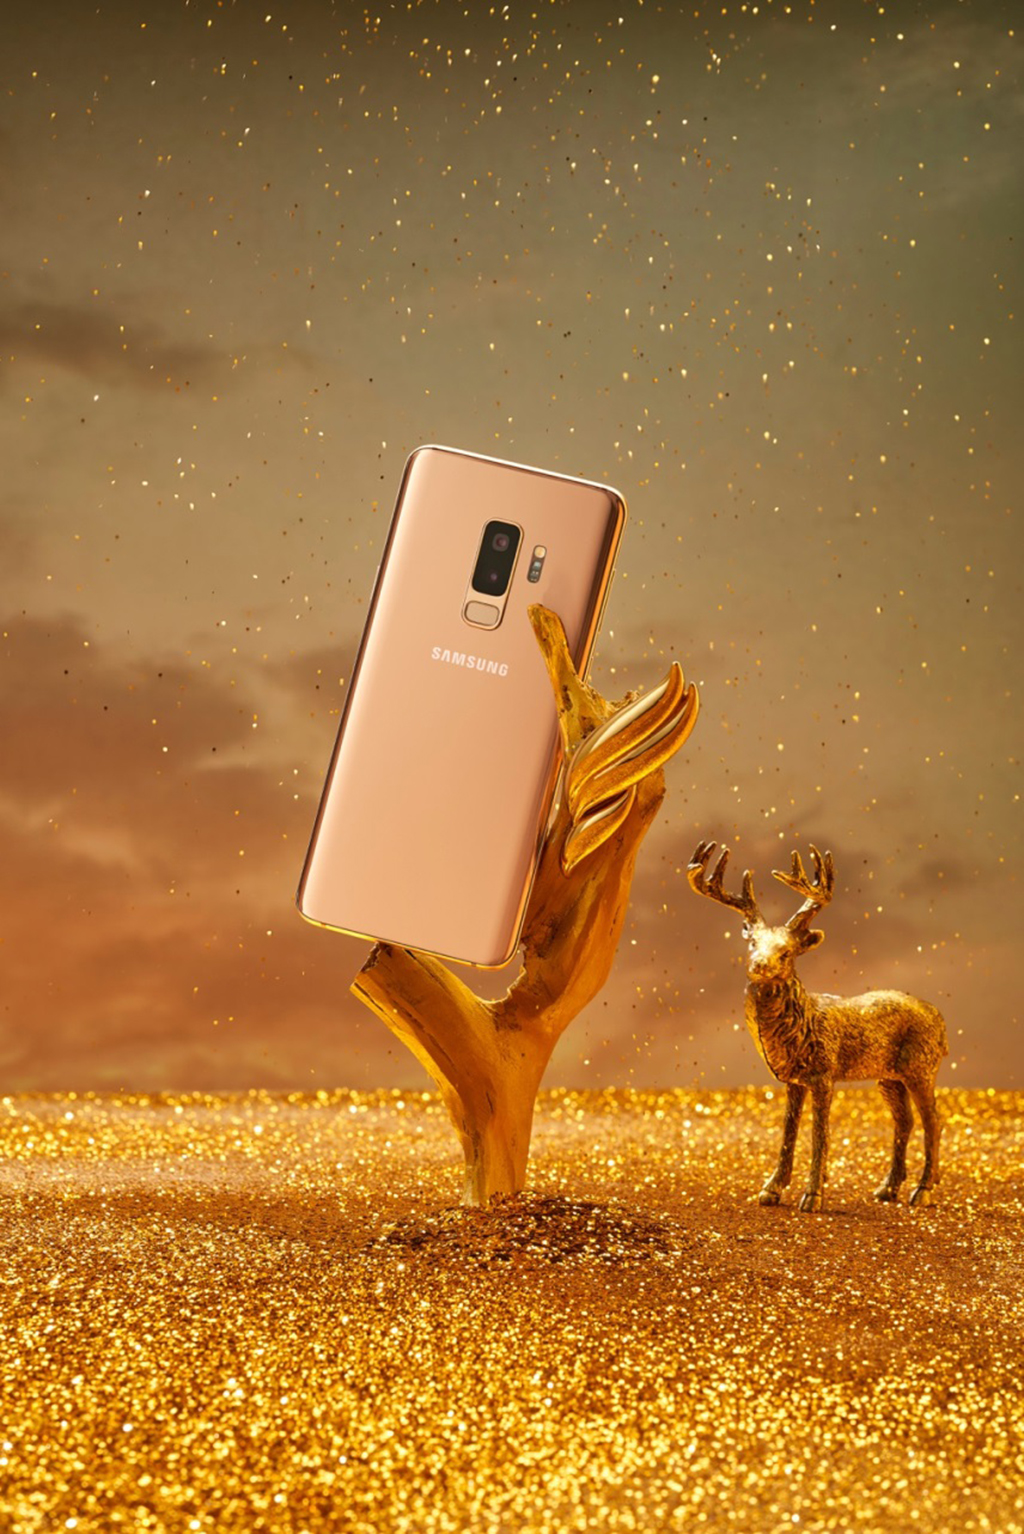 Giữa vùng đất của những nhũ vàng lấp lánh, Galaxy S9+ Hoàng Kim vẫn vươn lên đầy kiêu hãnh dưới cơn mưa nhũ vàng. Sắc vàng tươi mới đã giúp máy toát lên vẻ quyến rũ khó cưỡng 